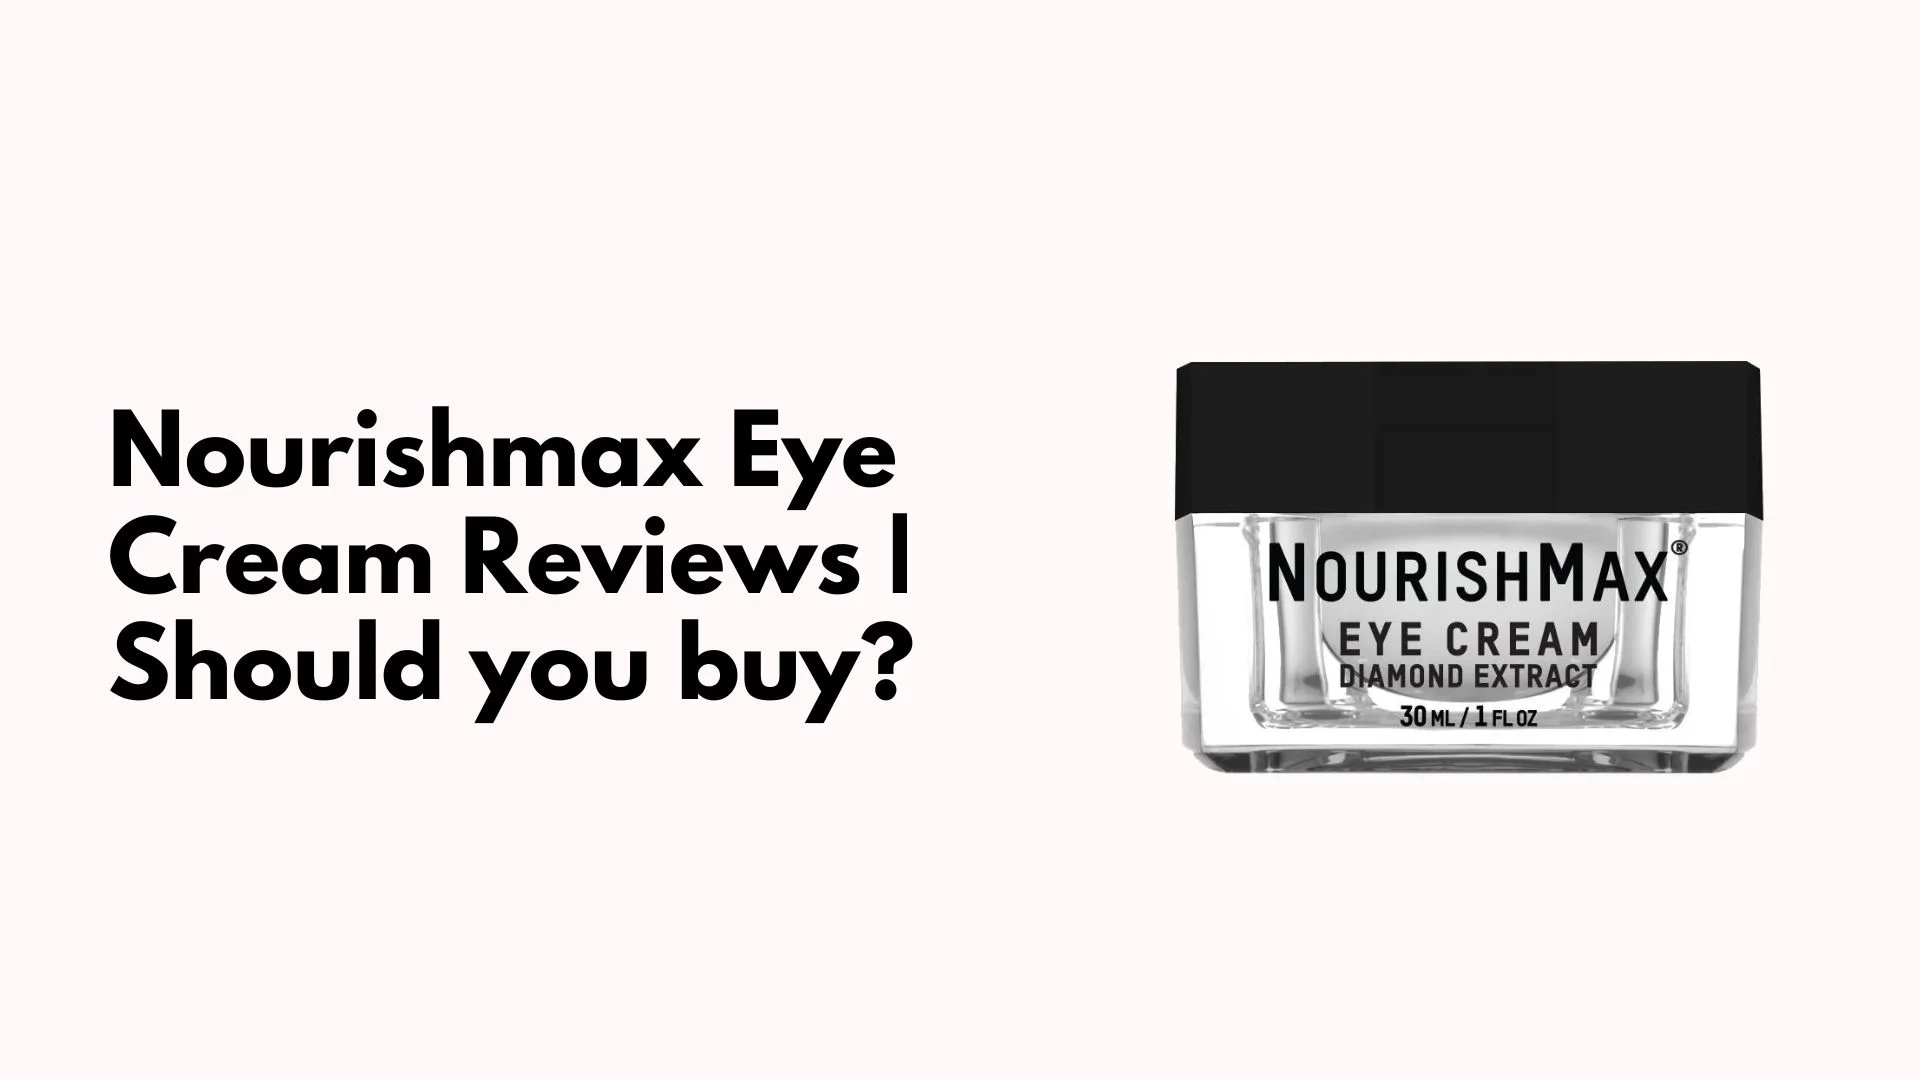 Nourishmax Eye Cream Reviews Should you buy